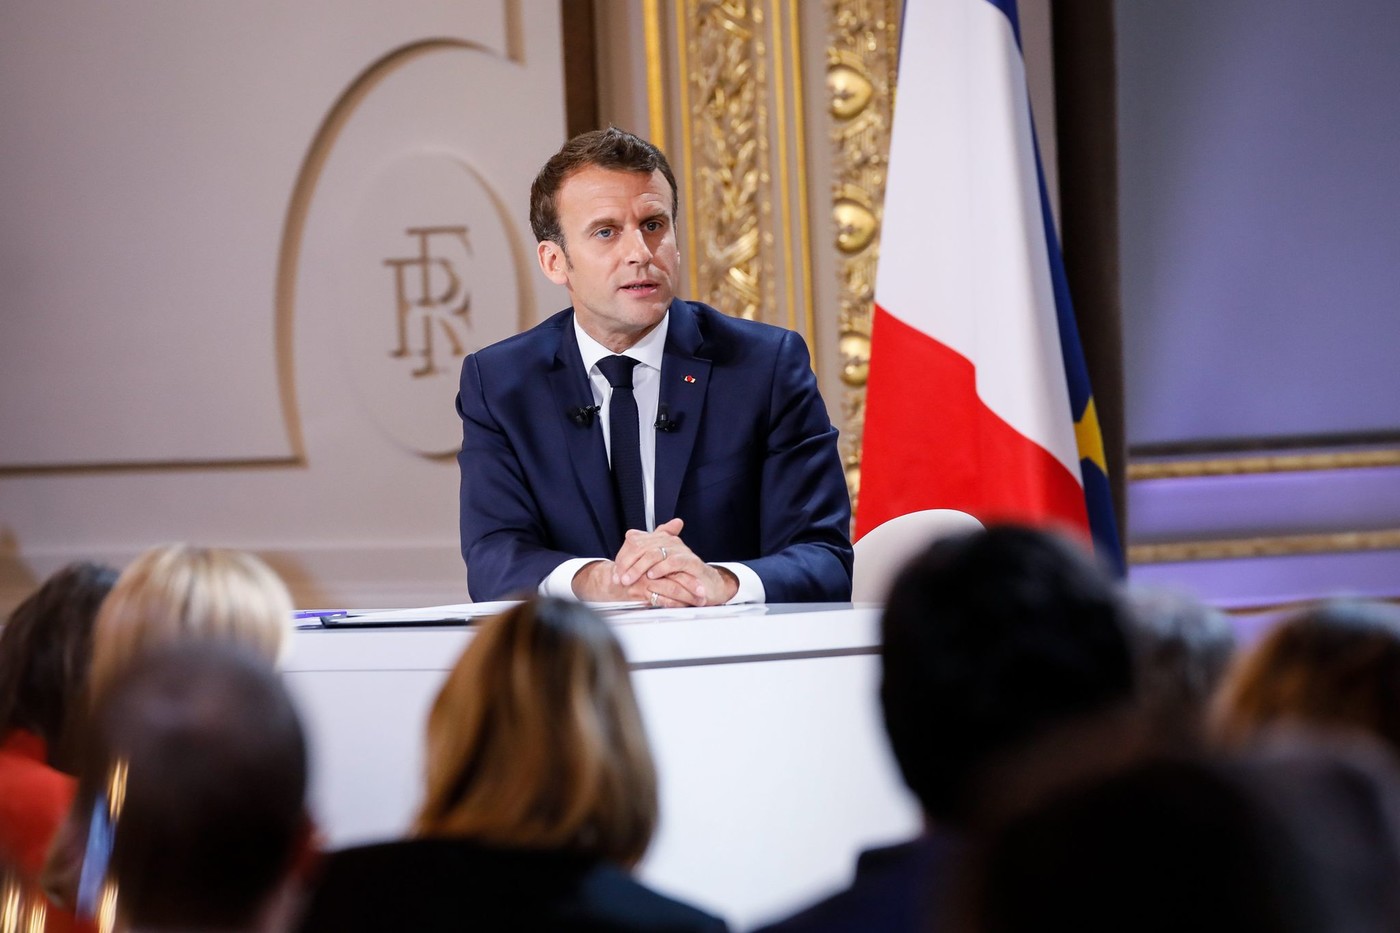 Impôts, démocratie, territoires : les réponses d’Emmanuel Macron après le Grand Débat